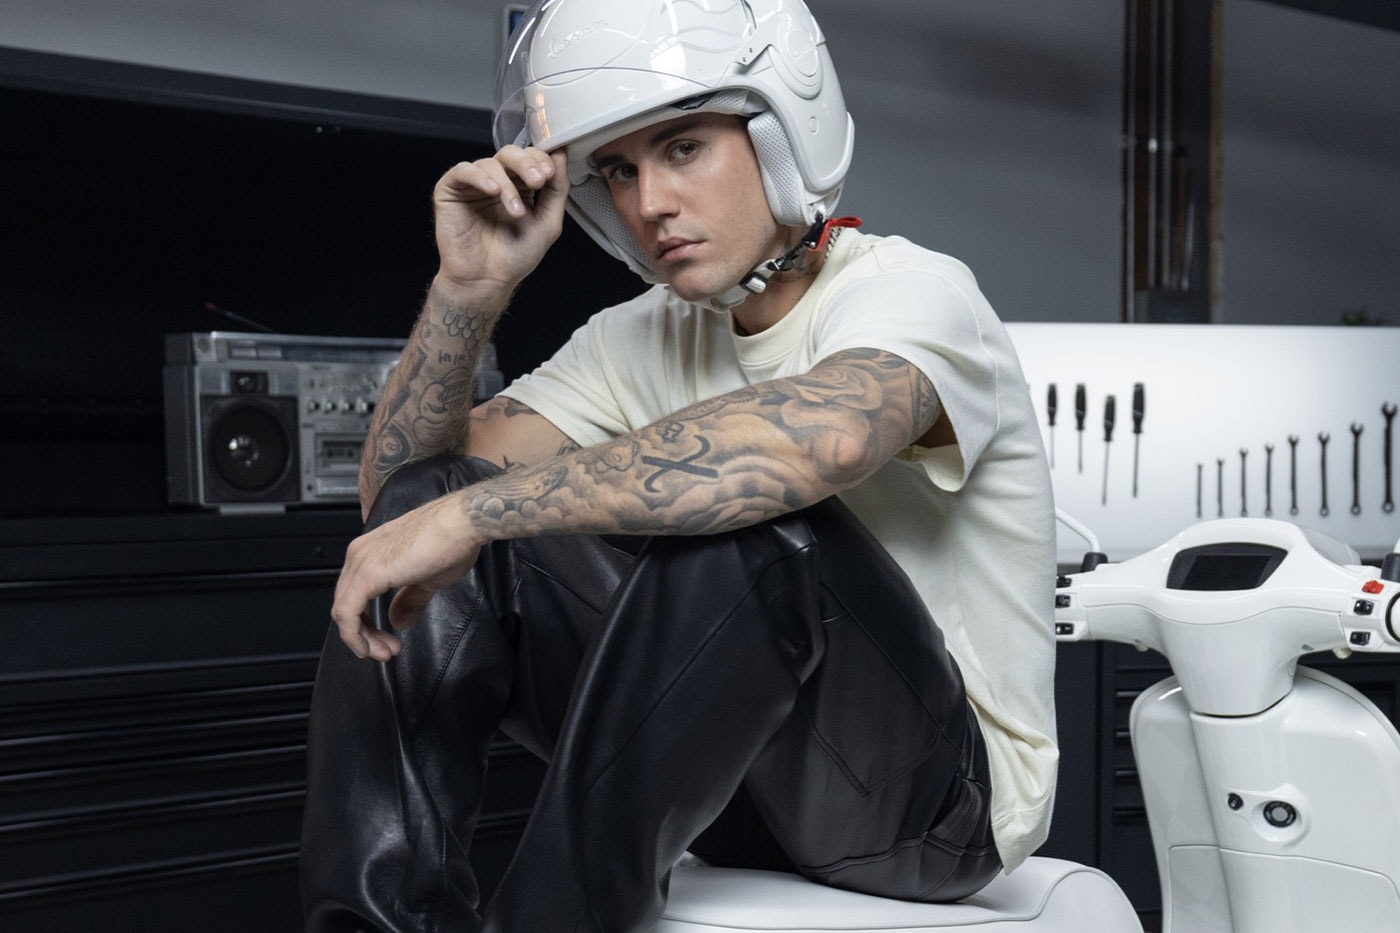 Justin Bieber x Vespa Collaboration Release